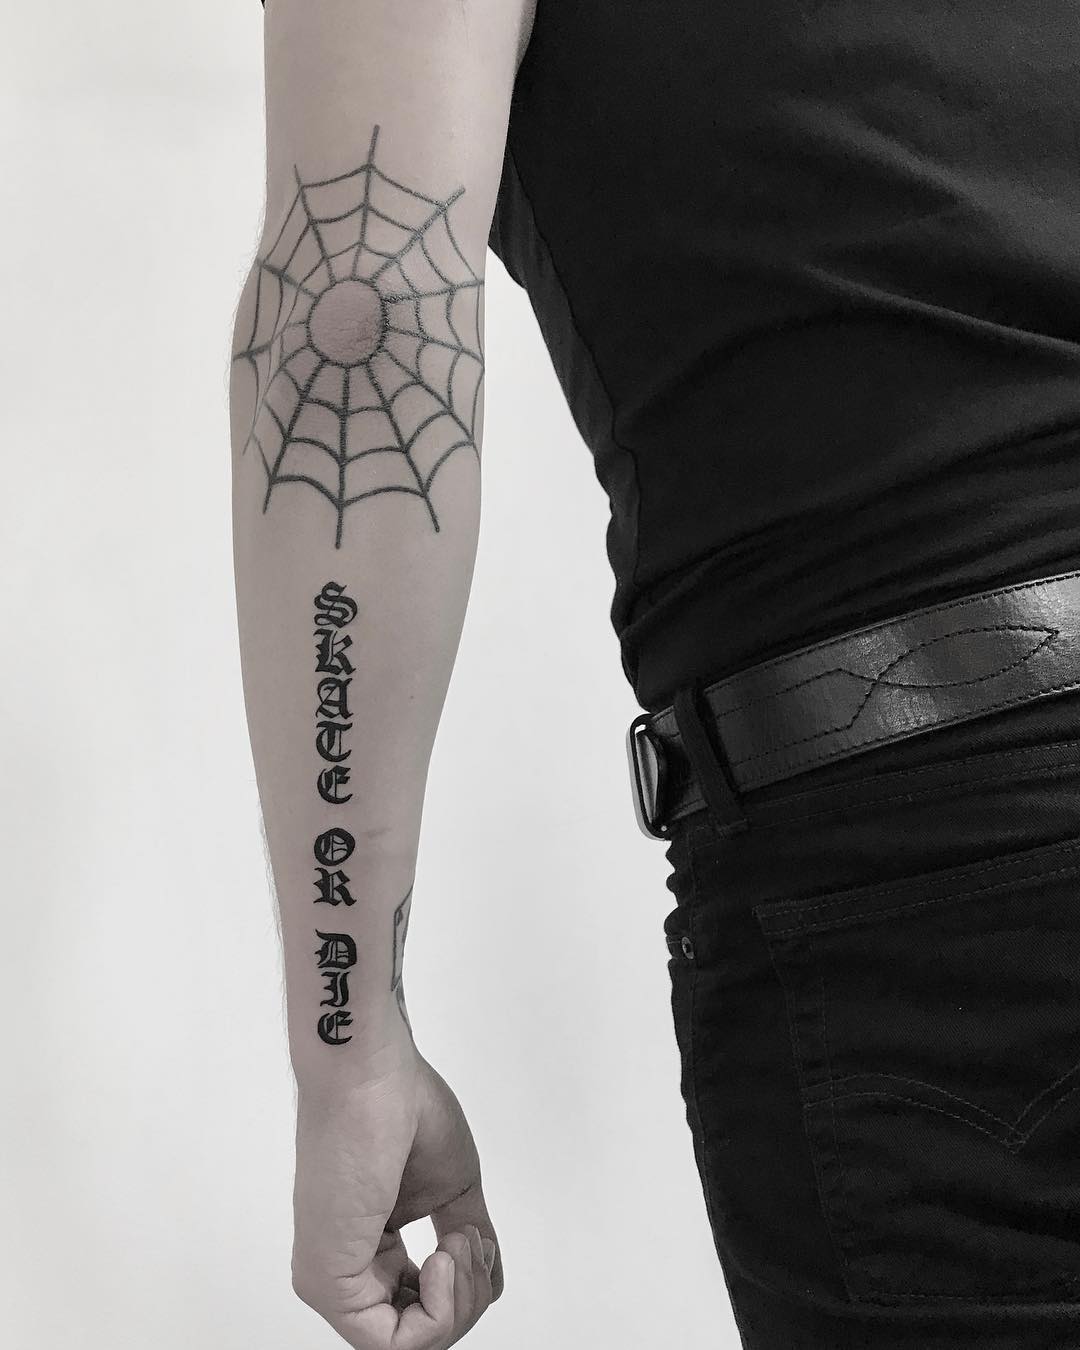 Skate or die tattoo by Krzysztof Szeszko